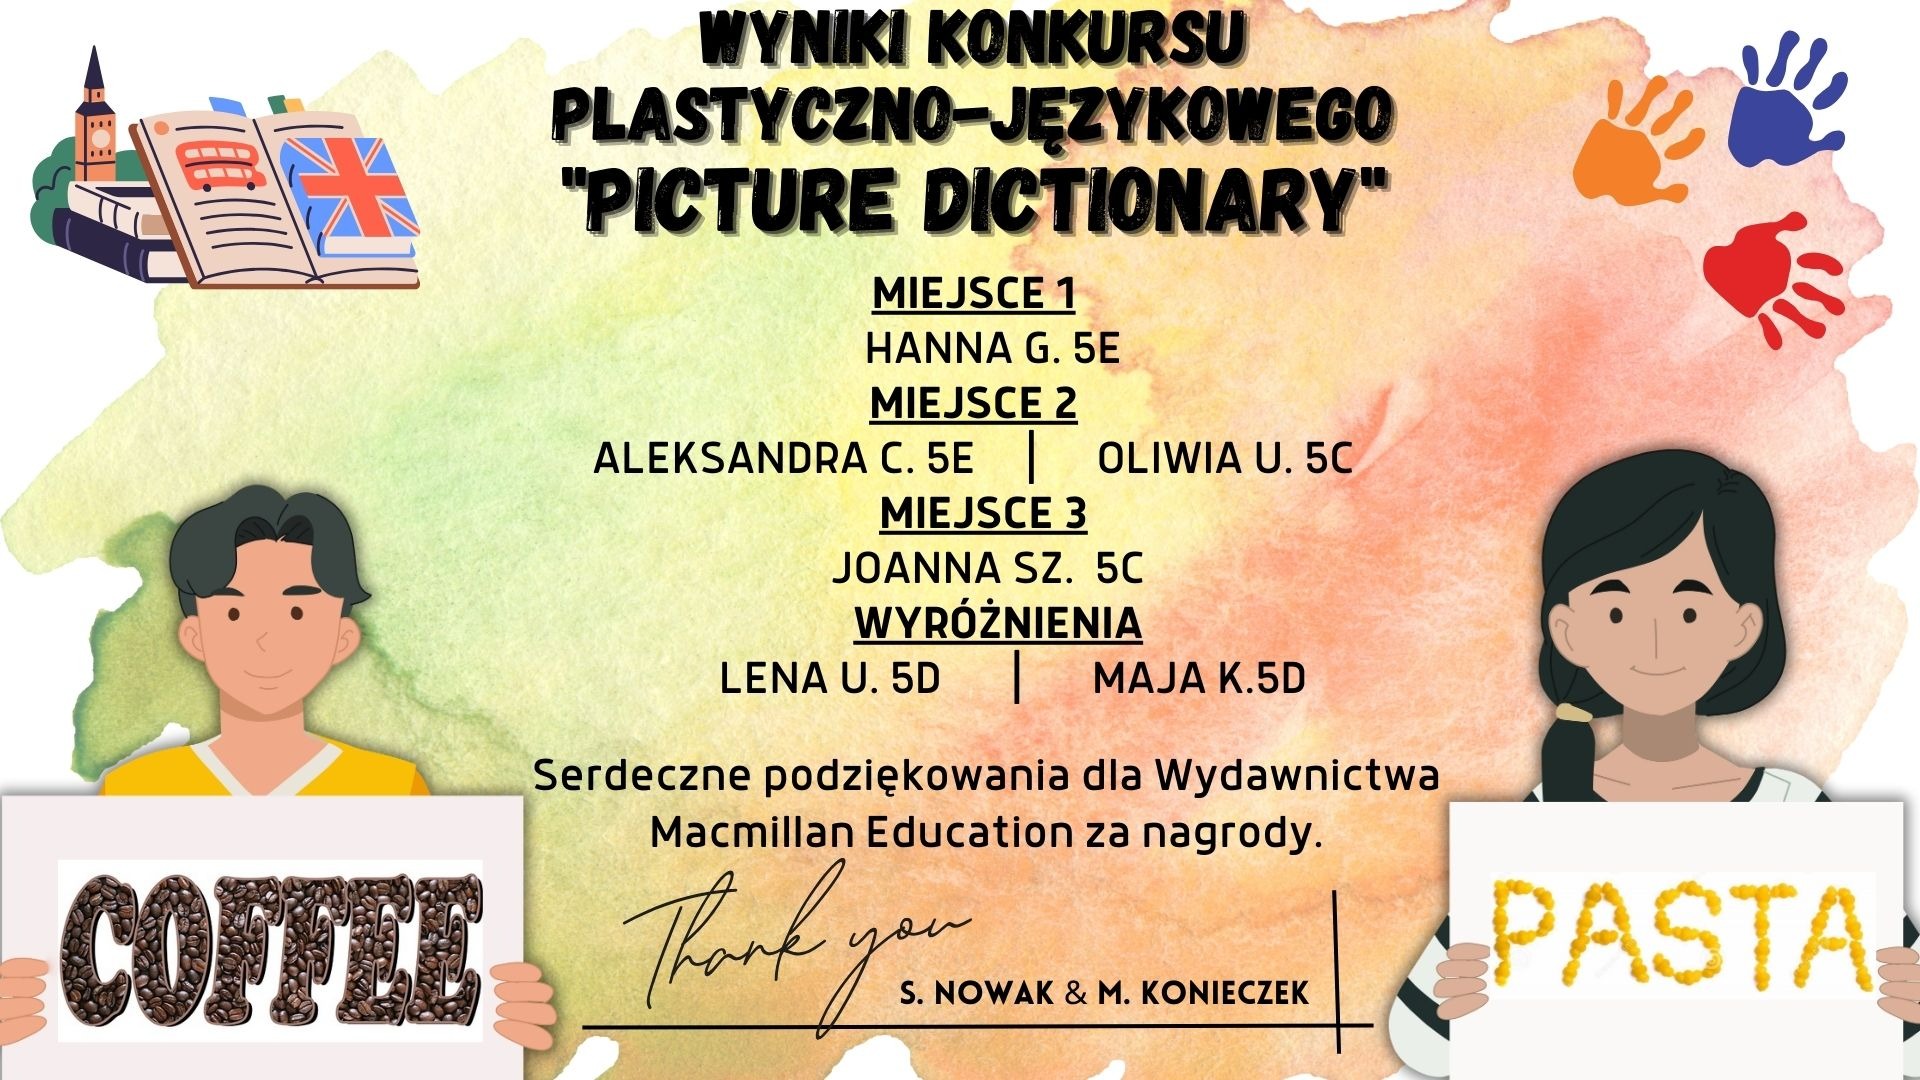 Wyniki konkursu plastyczno-językowego Picture Dictionary - Obrazek 1